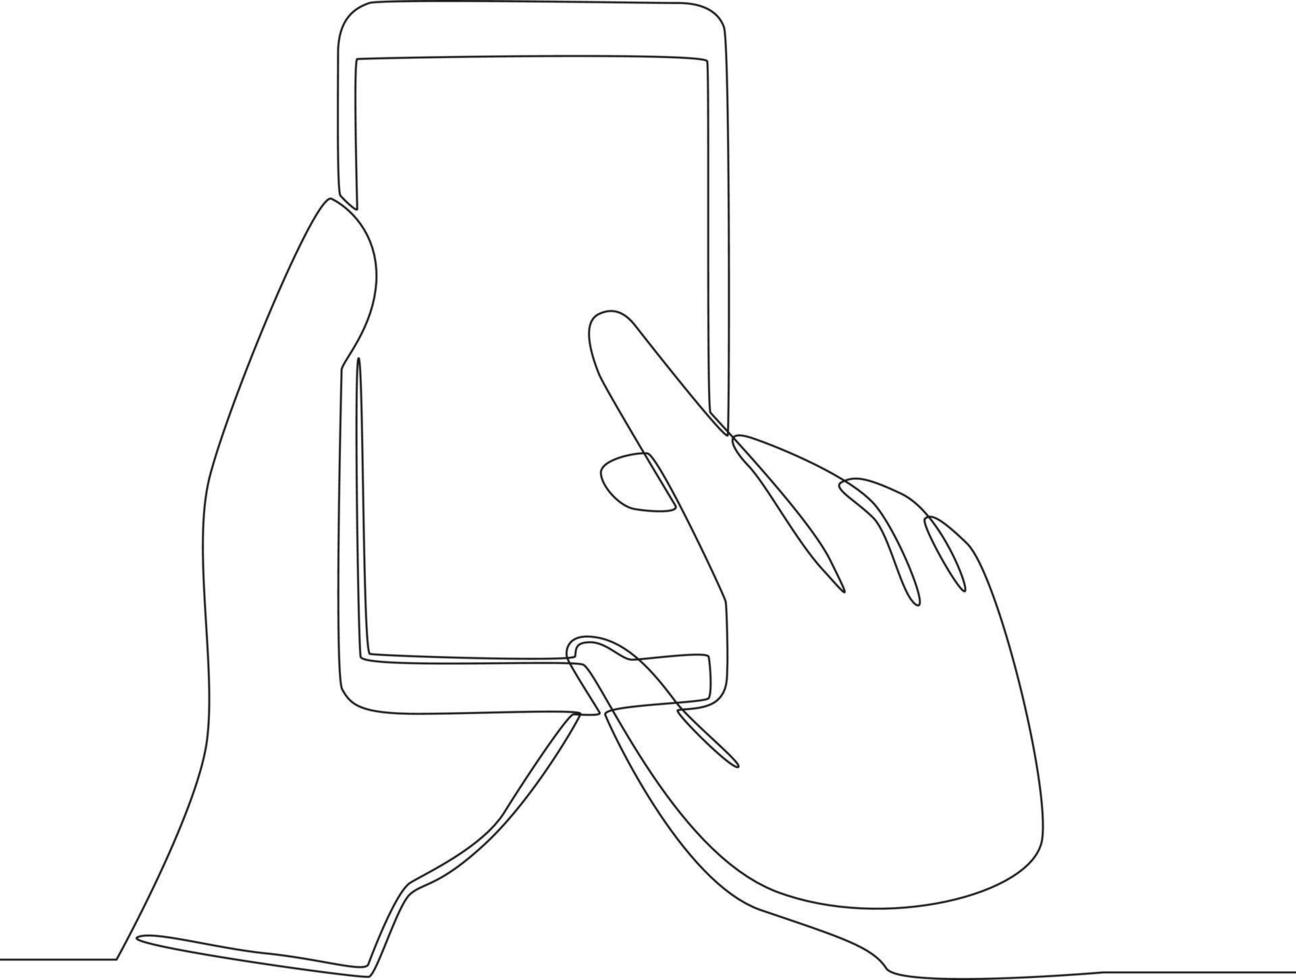 disegno a linea continua del dito puntato sullo schermo del telefono cellulare. le mani delle persone usando lo smartphone. illustrazione vettoriale. vettore